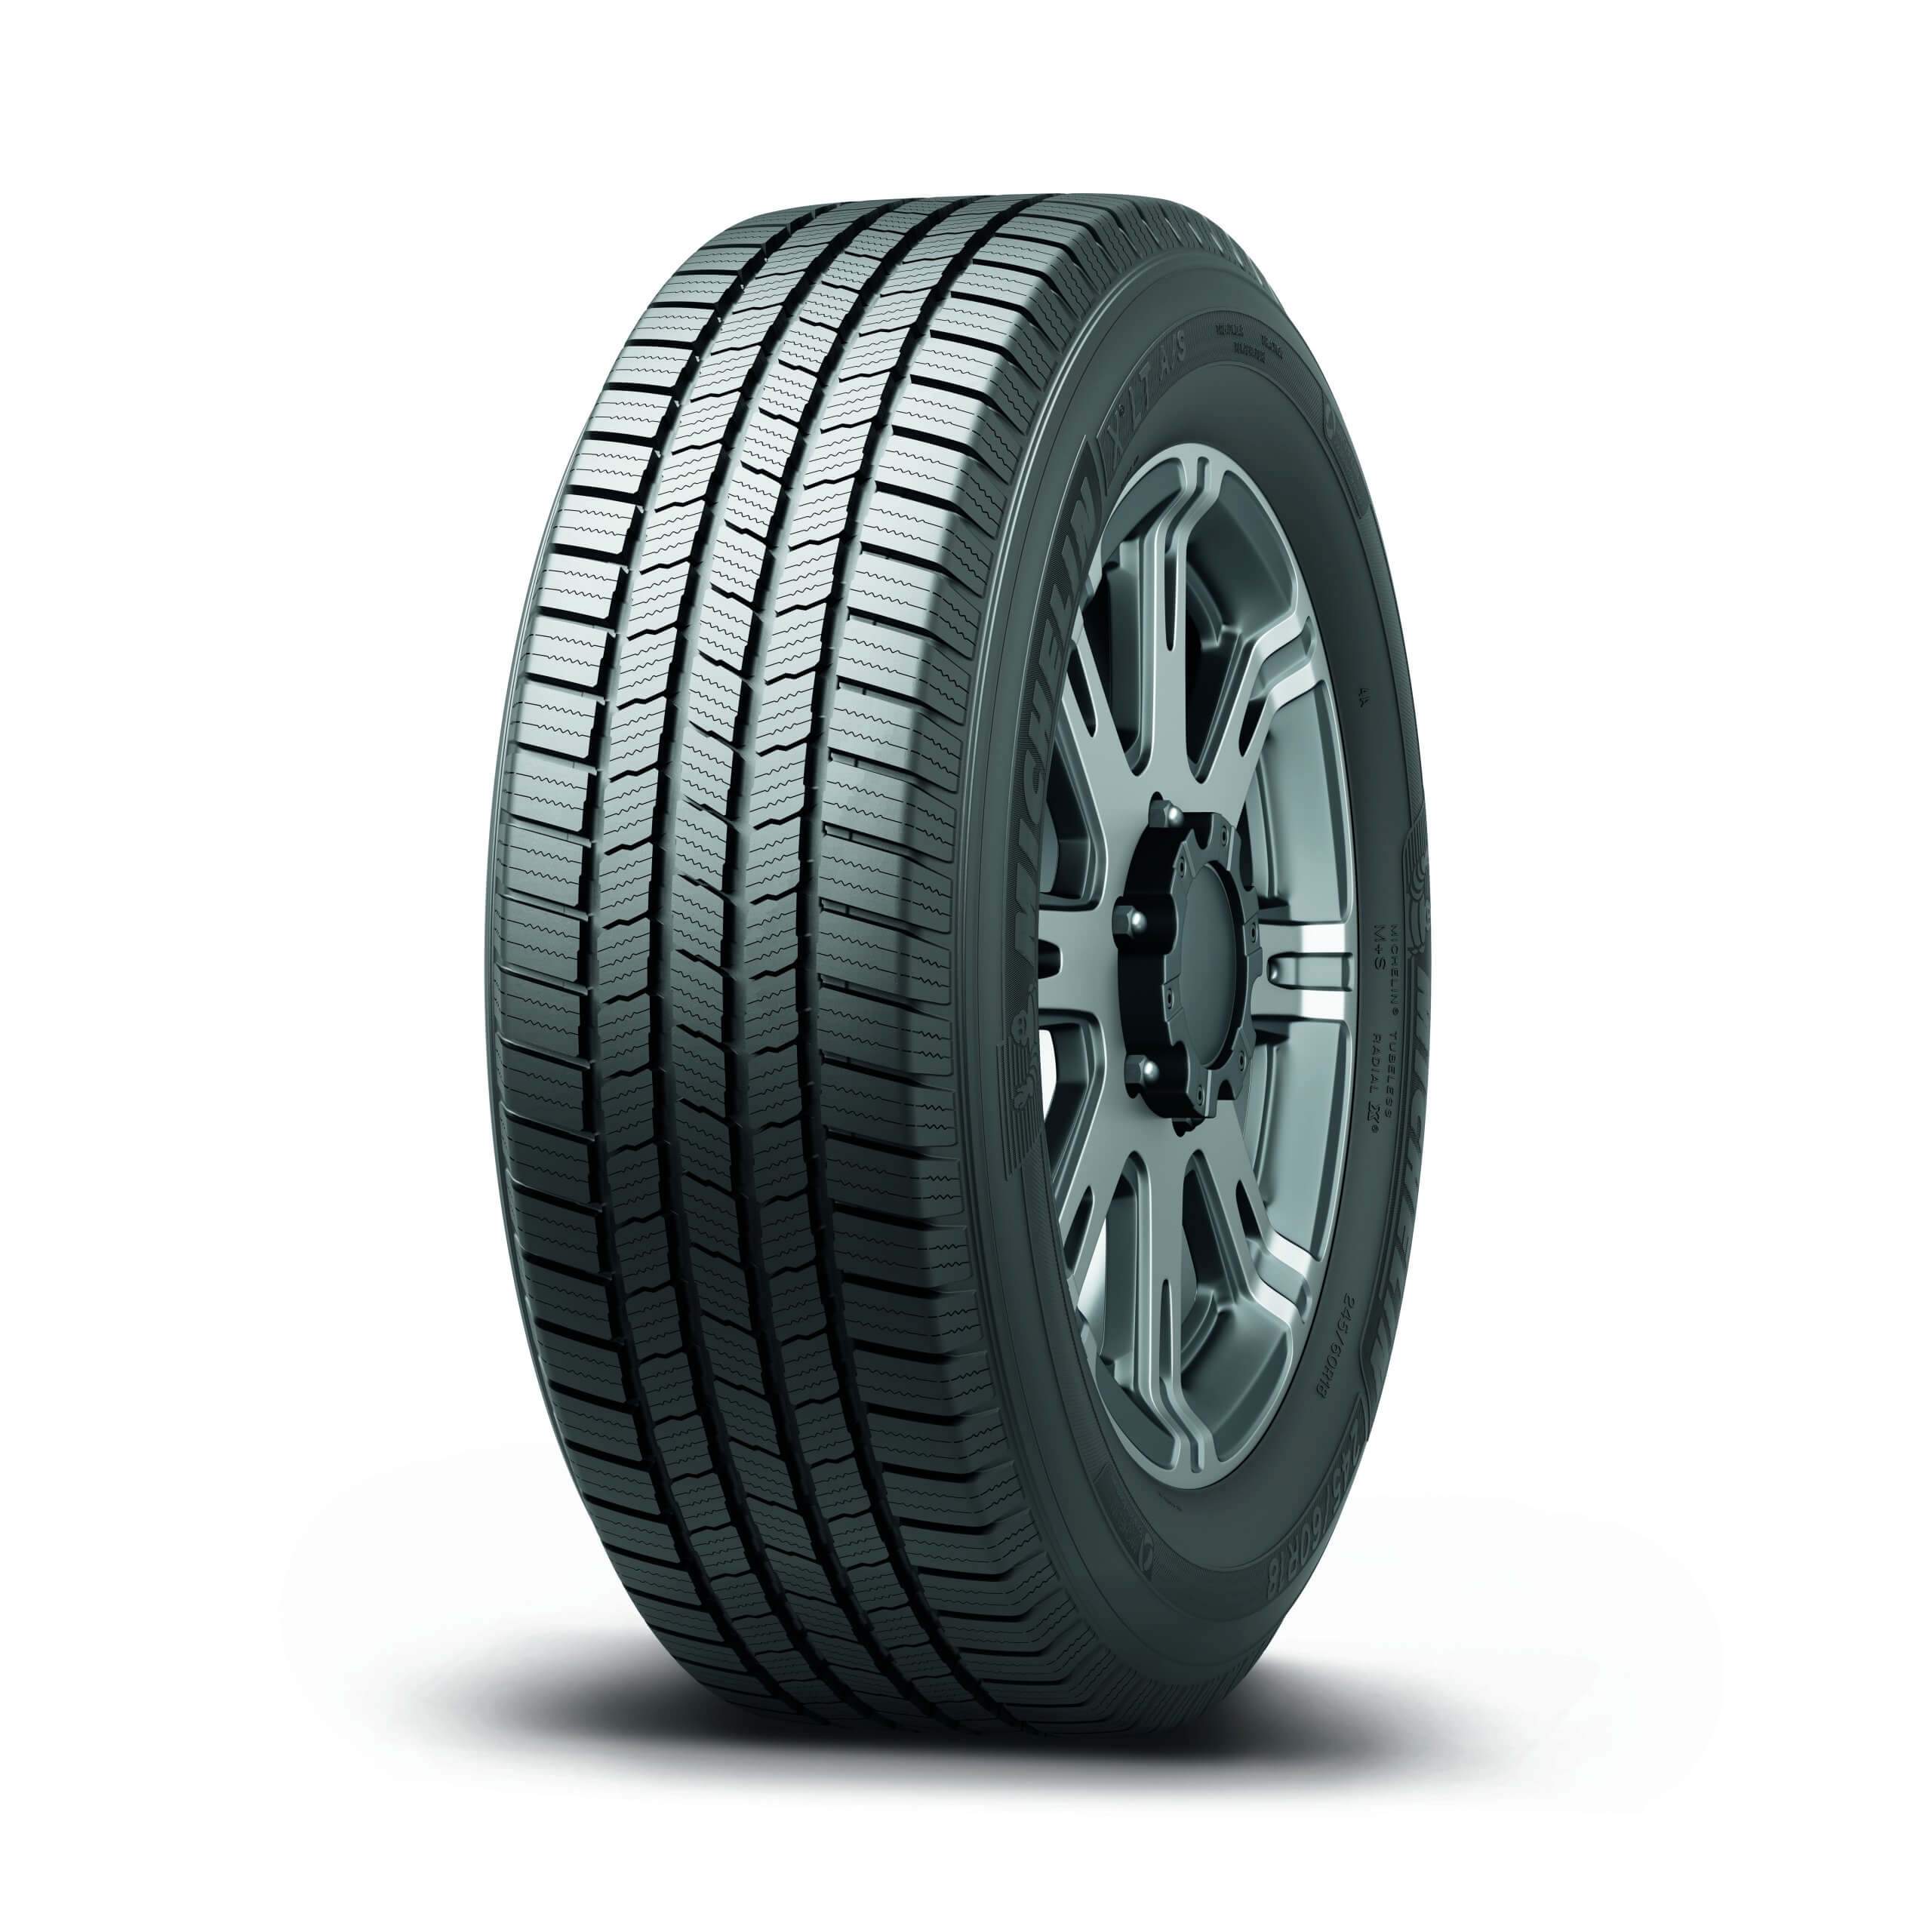 Neumático MICHELIN 265/70 R16 X LT A/S RBL